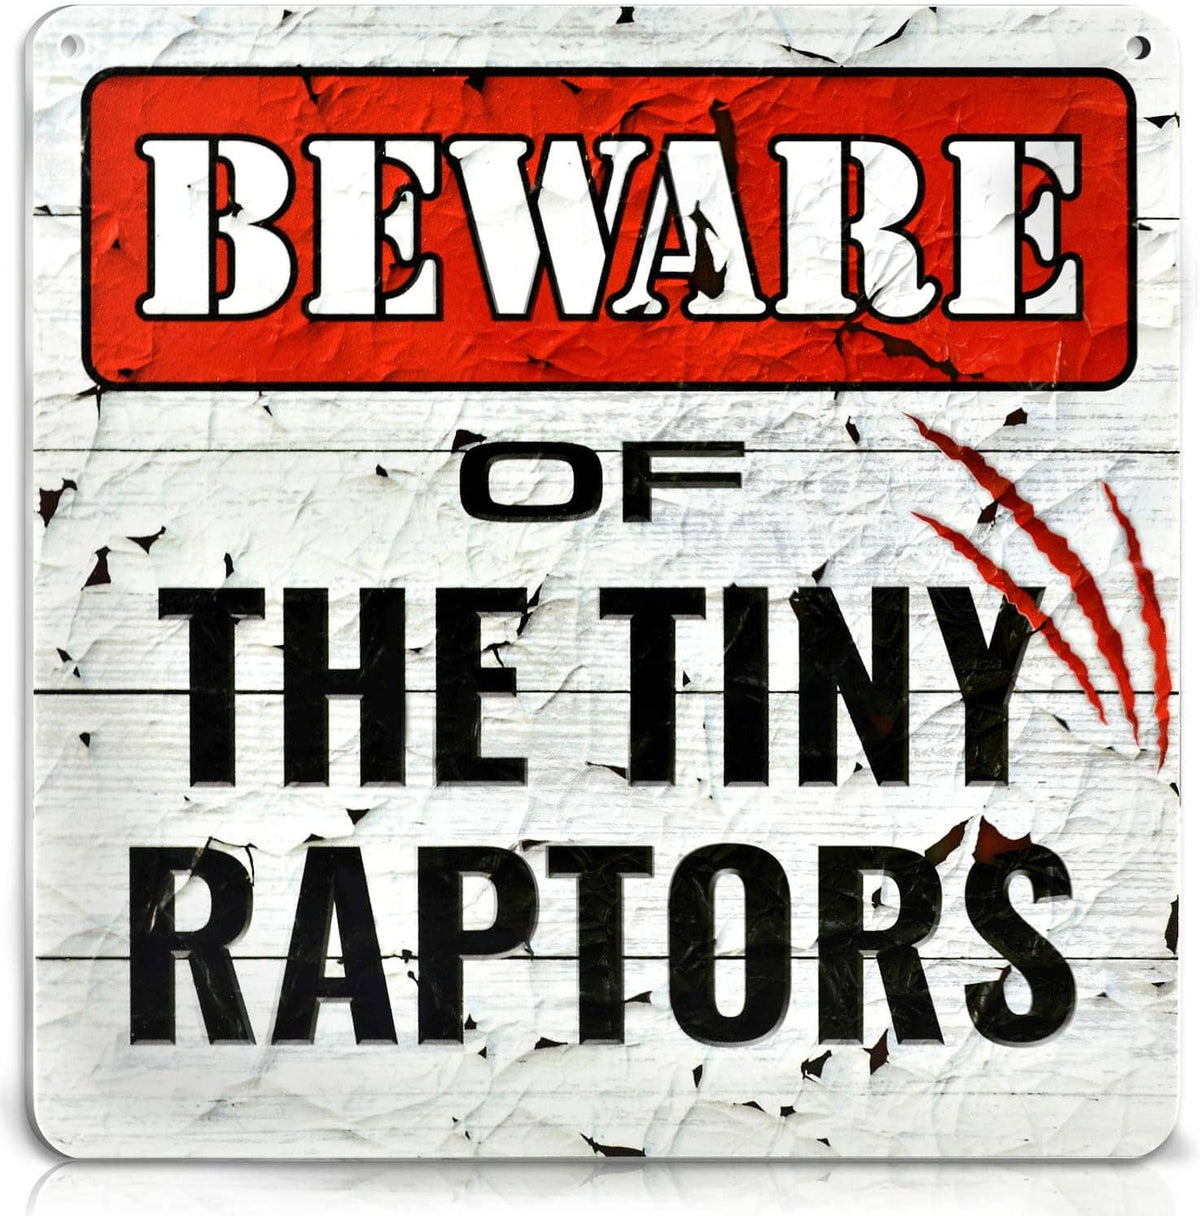 Beware of Tiny Raptors Chicken Coop Sign